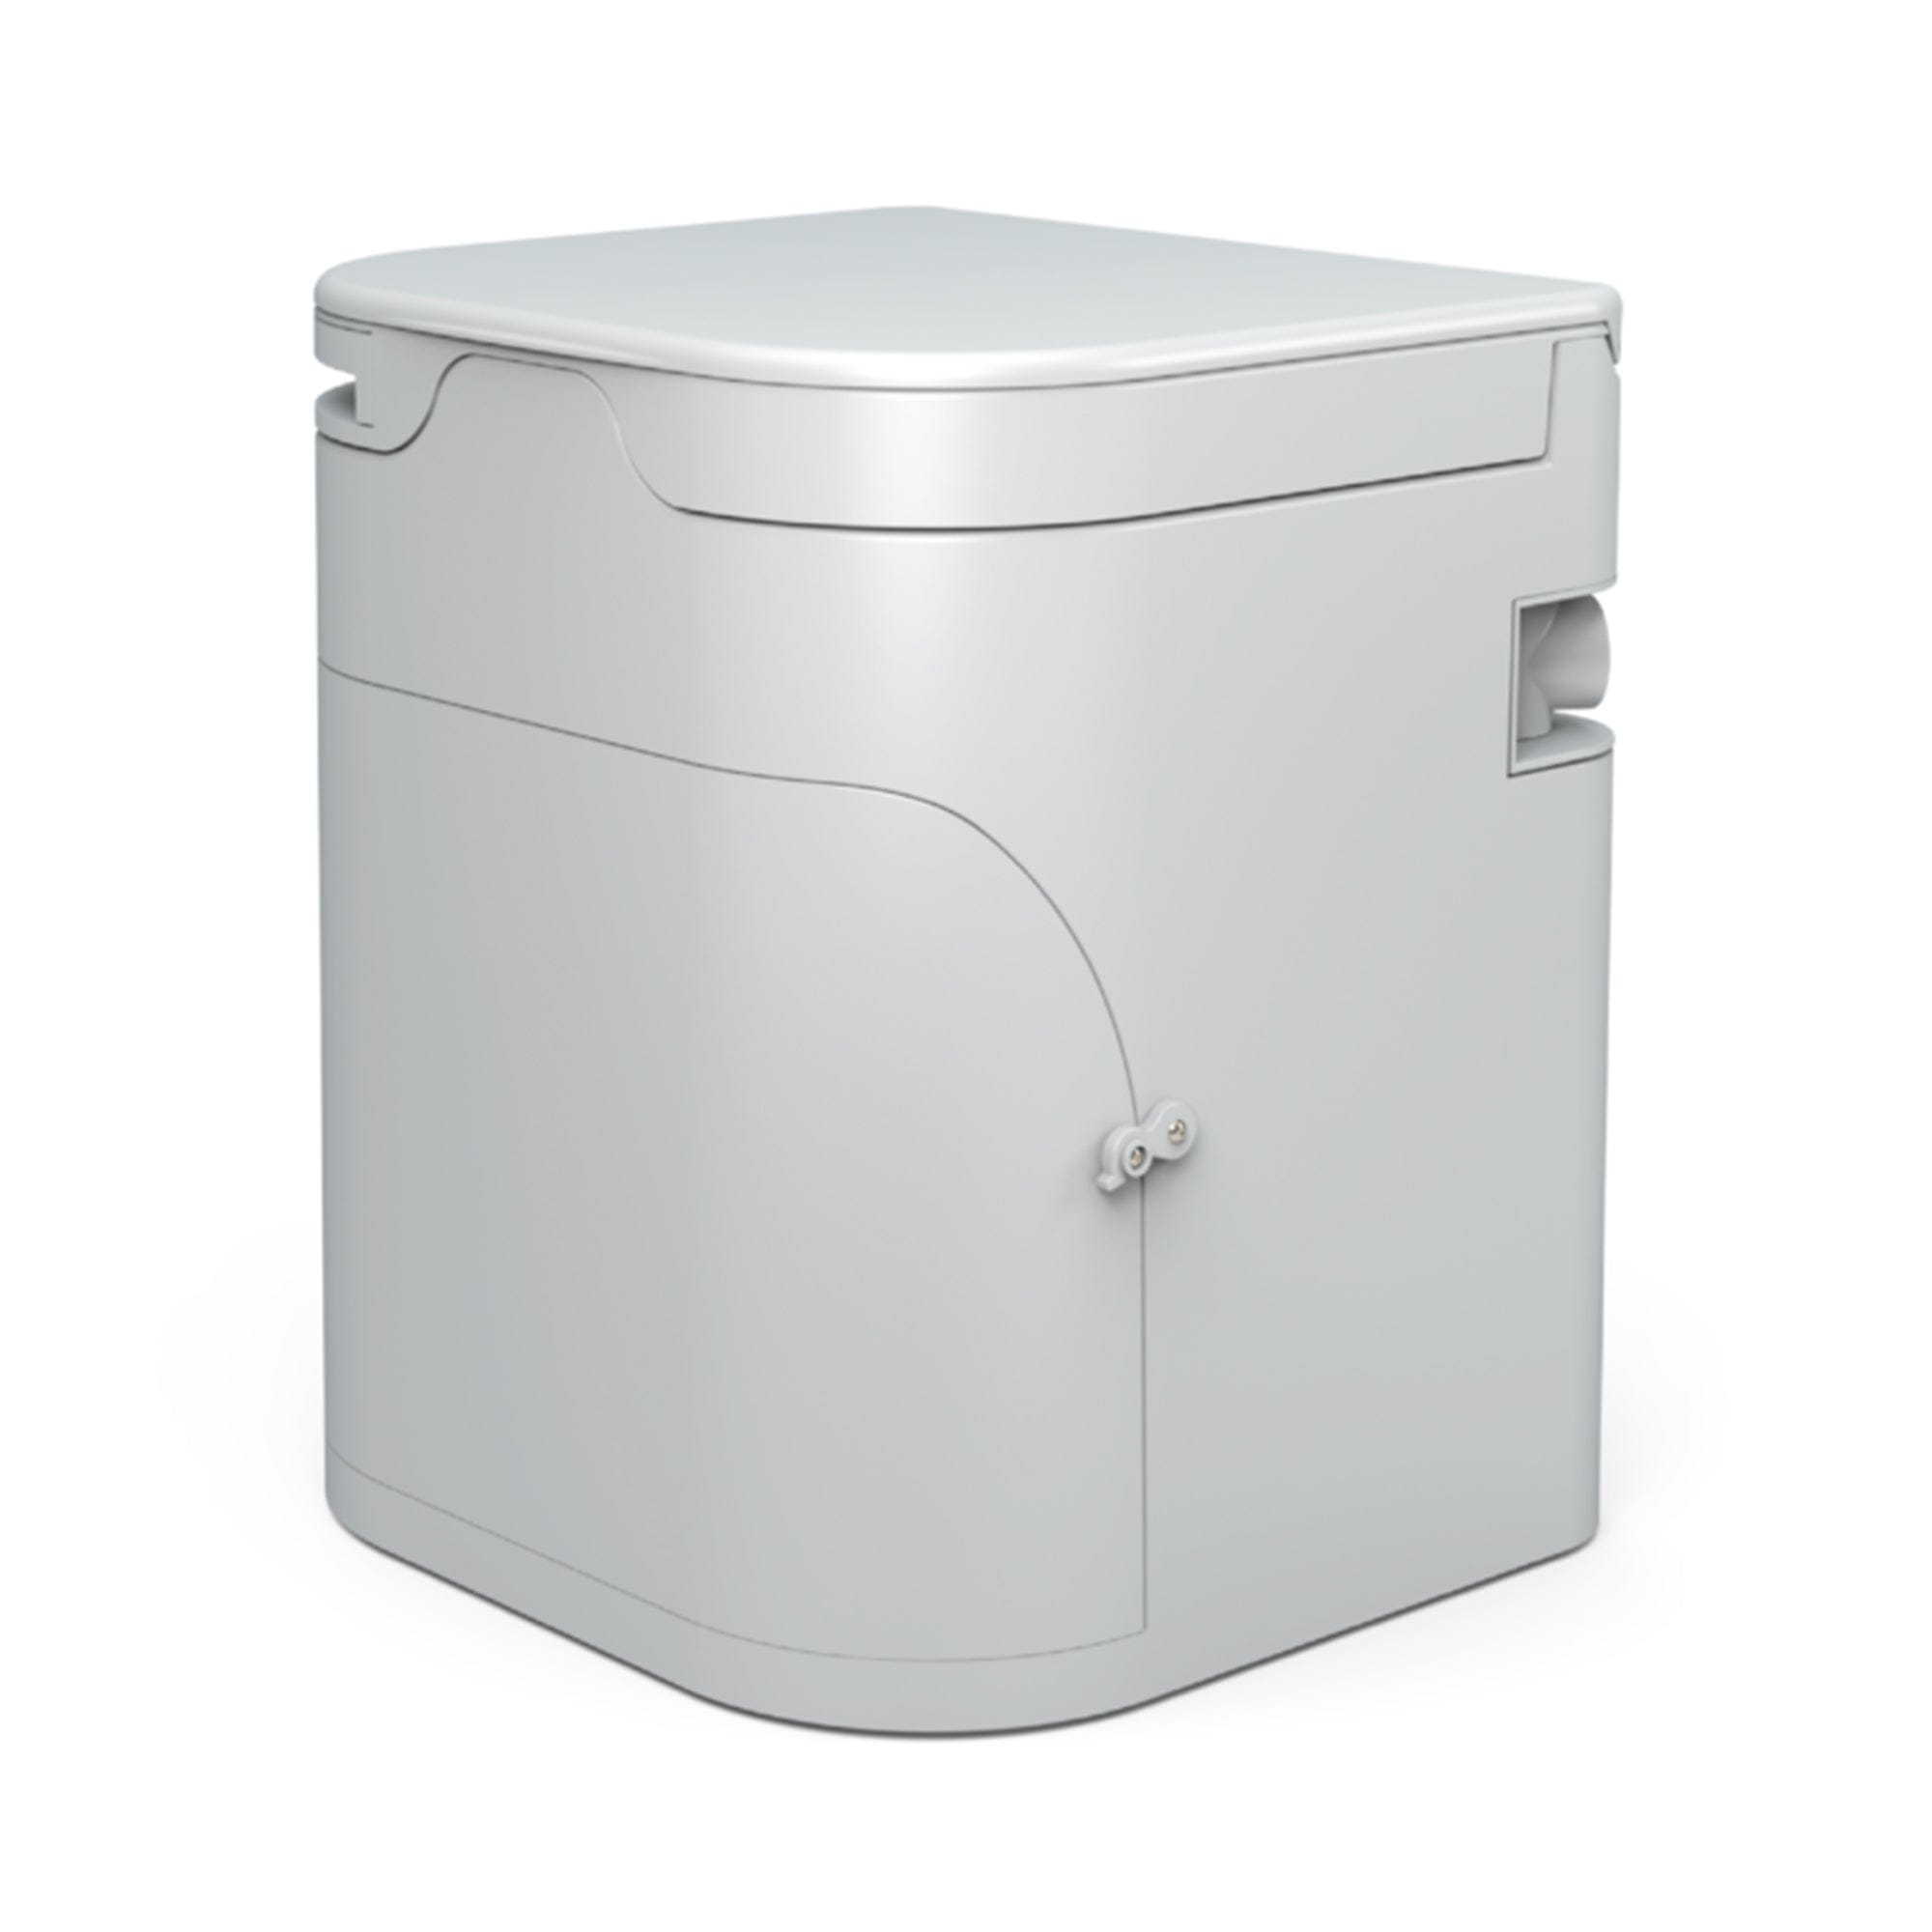 OGO ogo-wht-2101 Composting Toilet, 12V